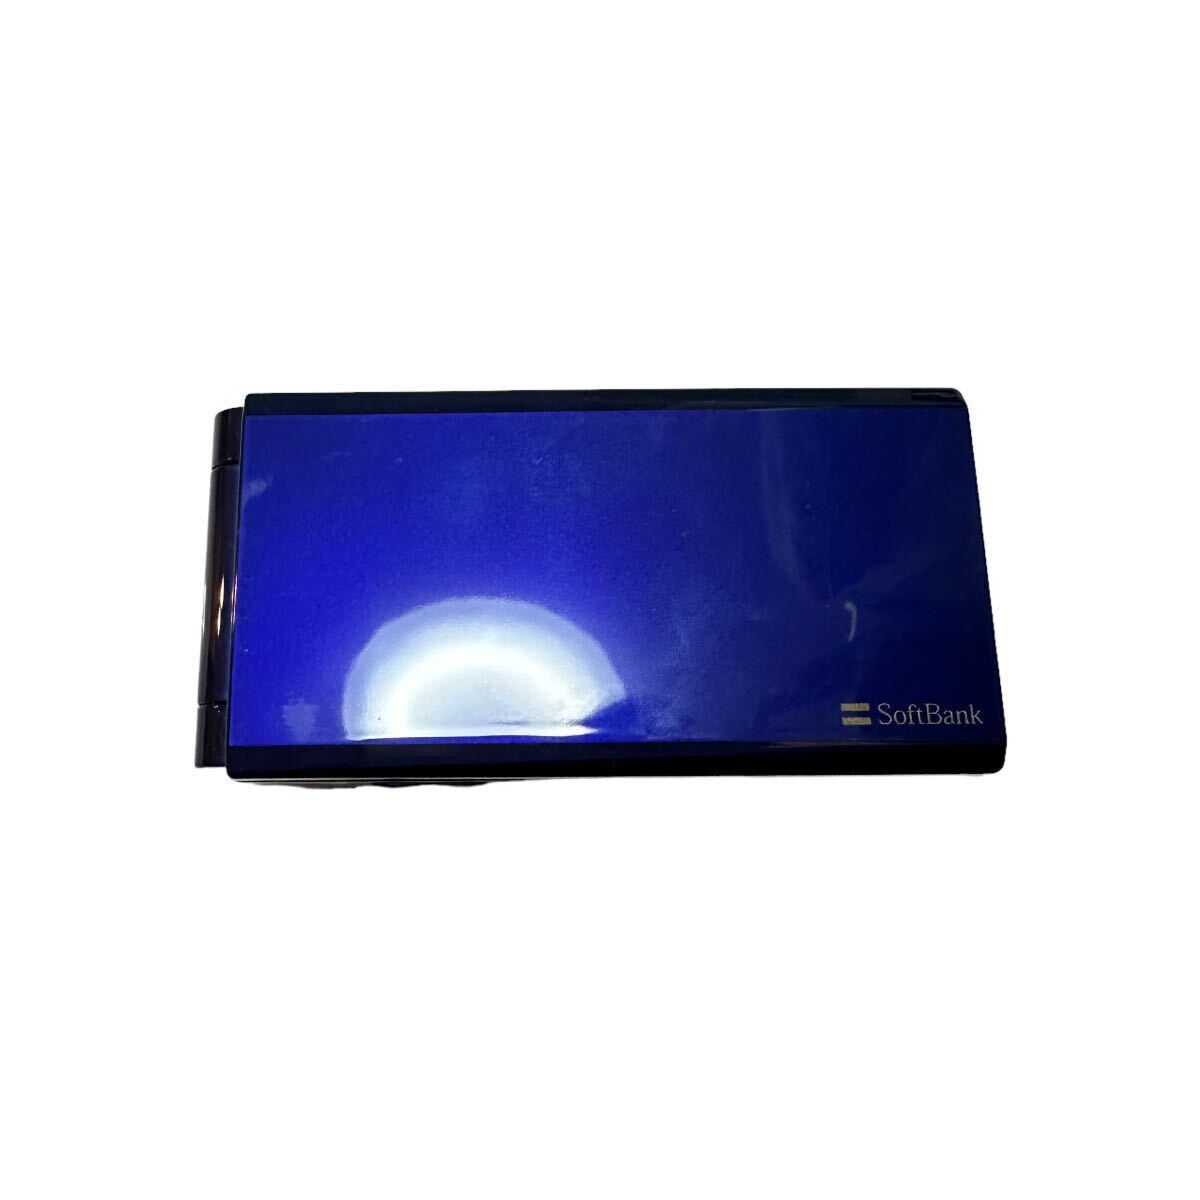 未使用 SoftBank 740SC ブルー ガラケー 携帯電話 折りたたみ携帯 3G プリペイドの画像2